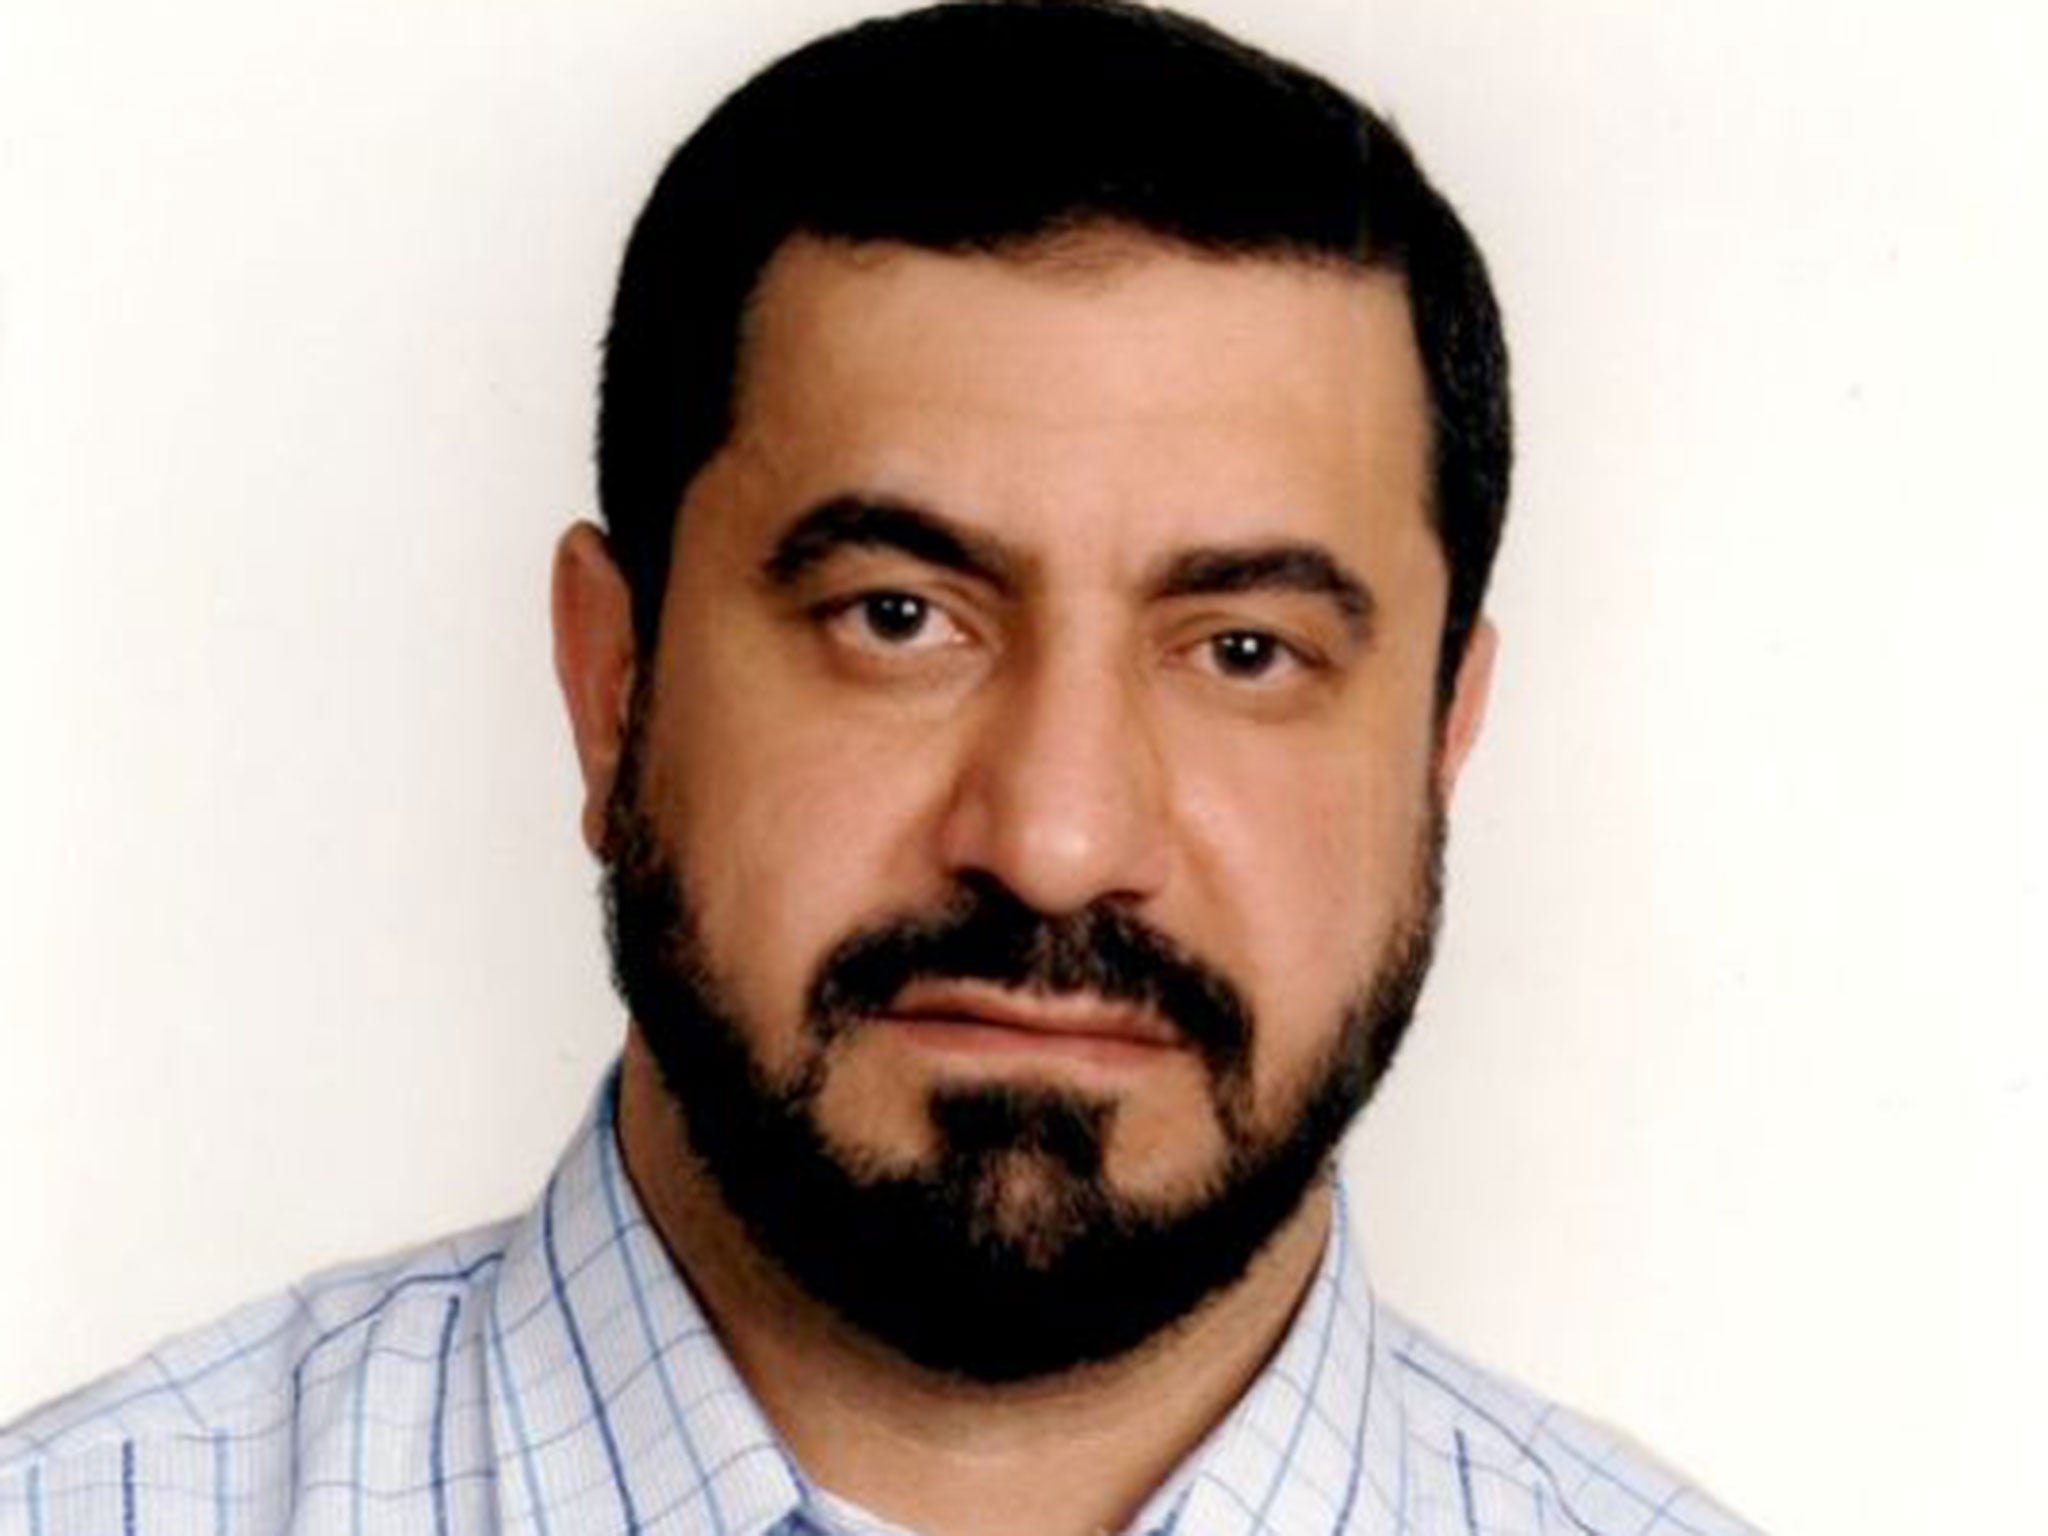 Abdul Hadi Arwani, an imam originally from Syria, was shot dead